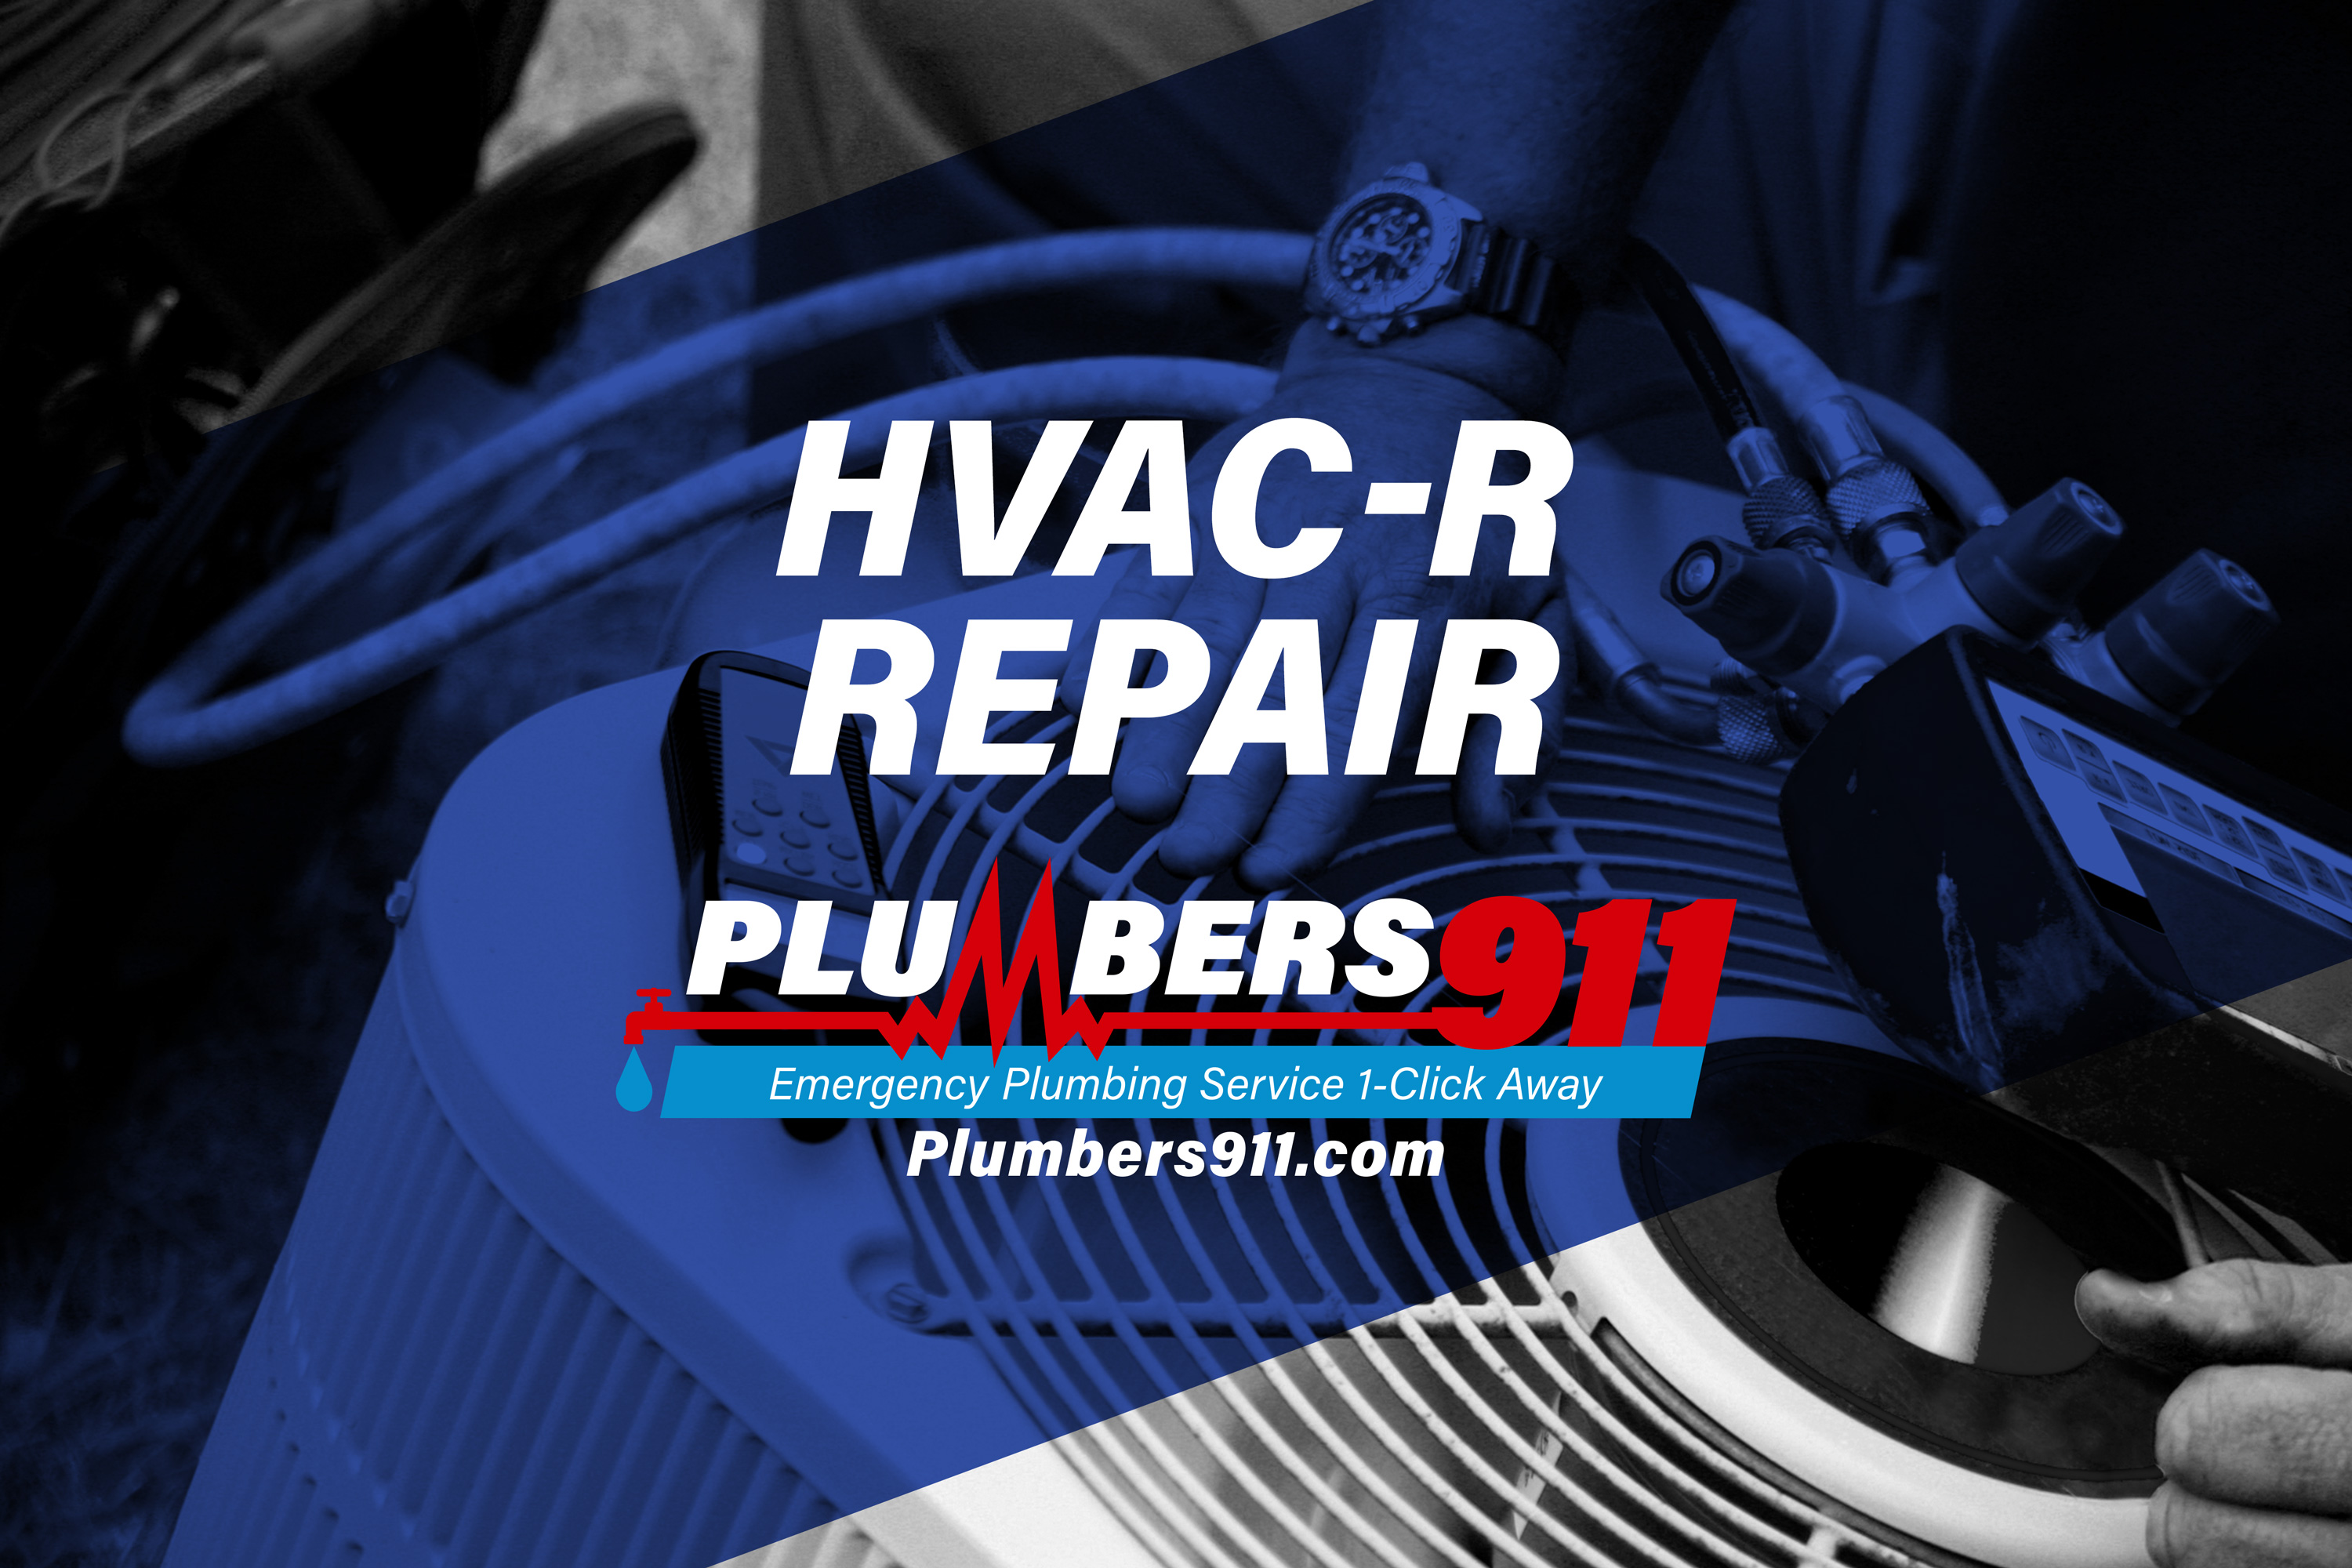 Plumbers 911 - Emergency Plumbing Services - HVACR Repair